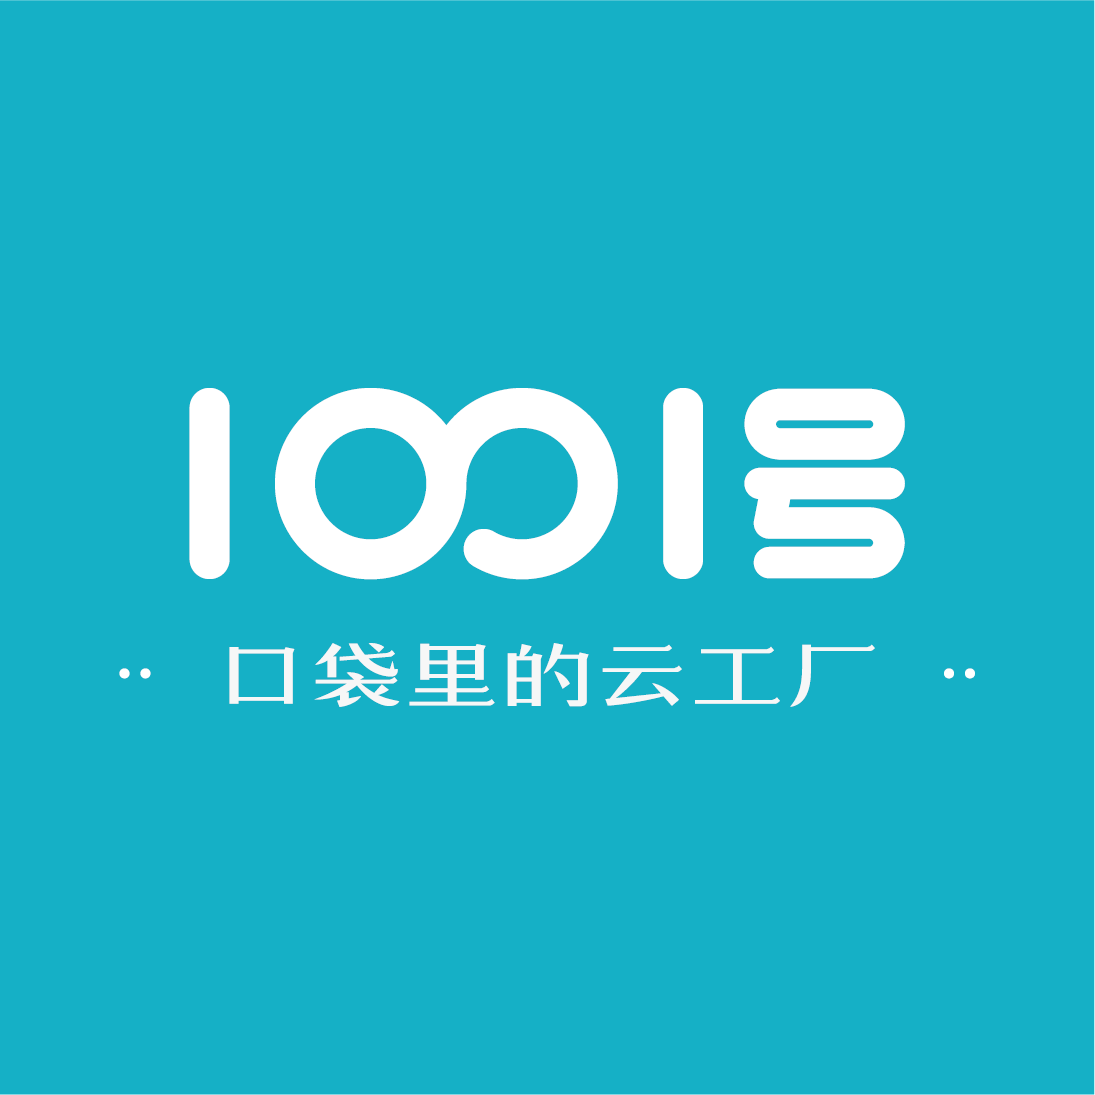 1001号(壹千零壹号)